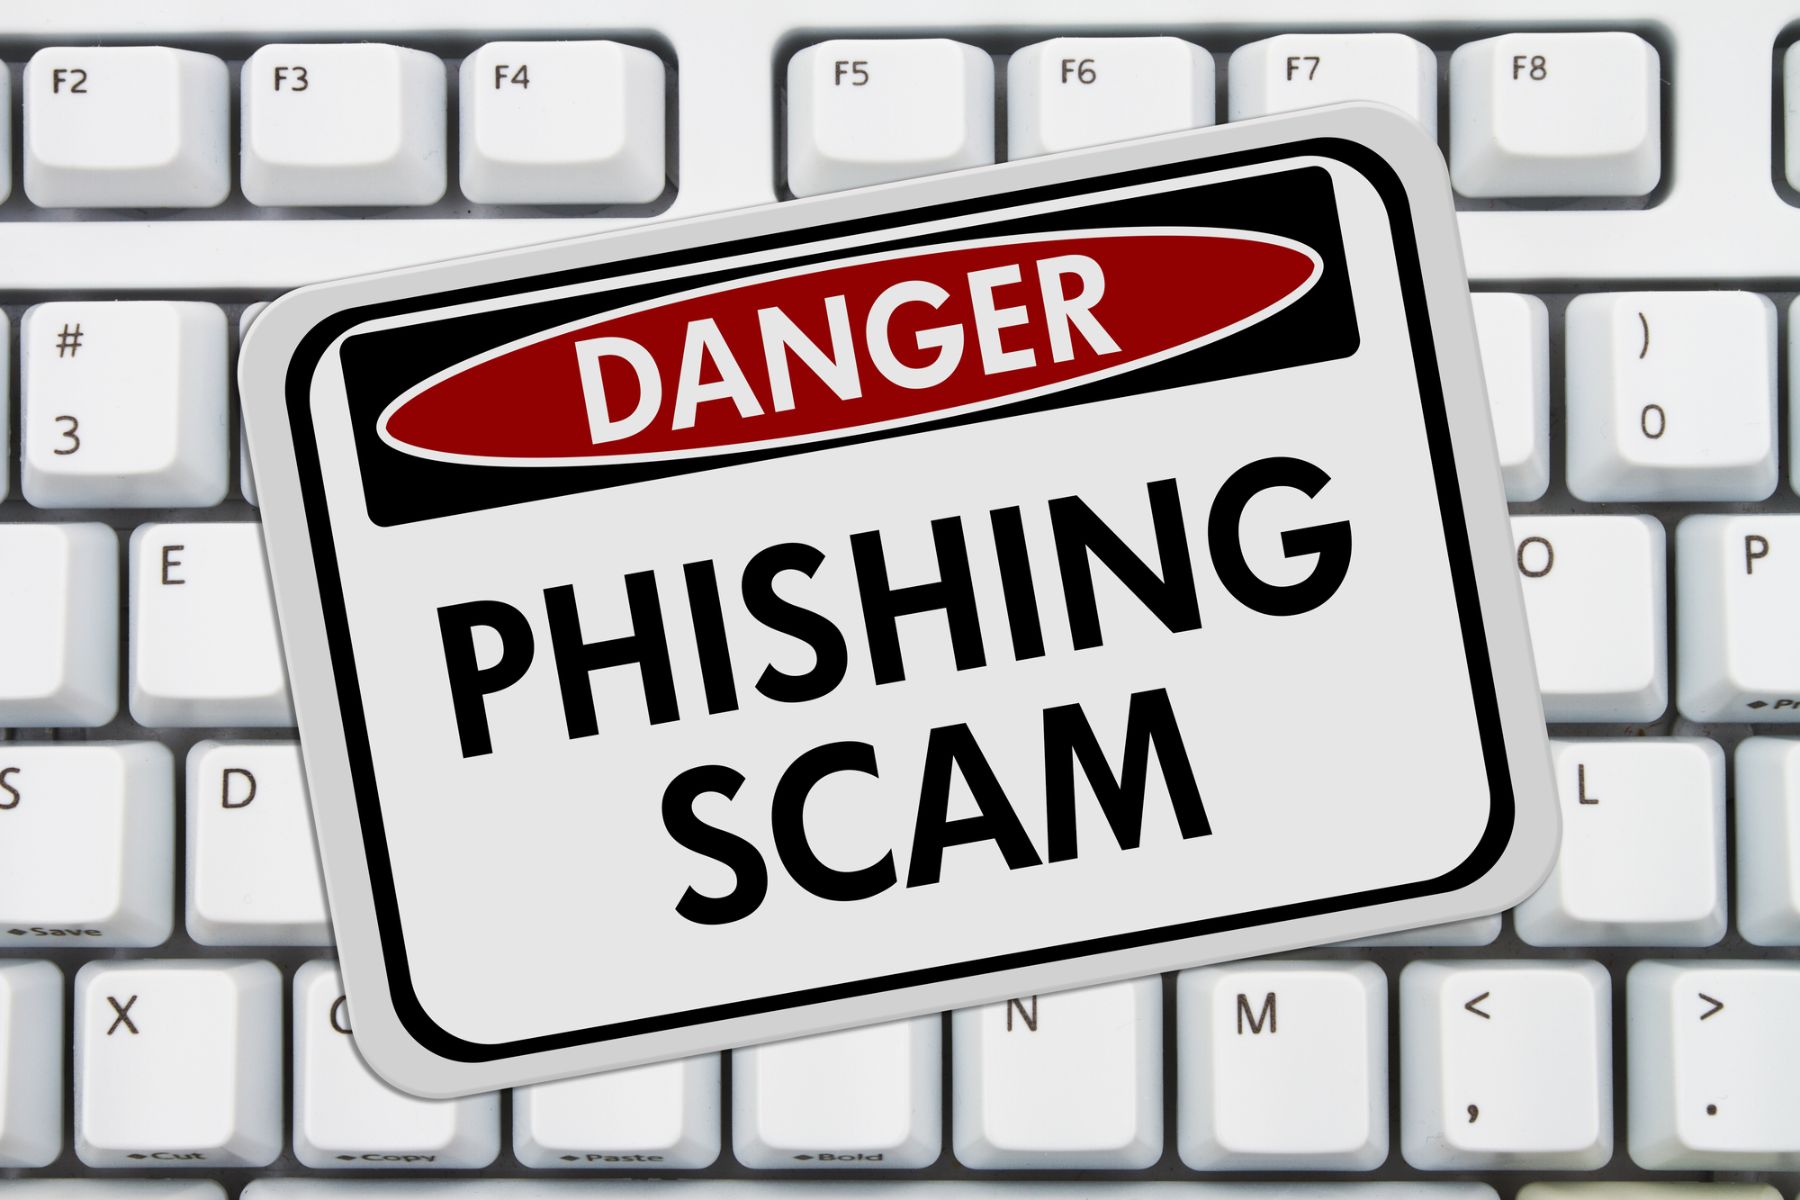 Danger Phishing Scam sign on keyboard